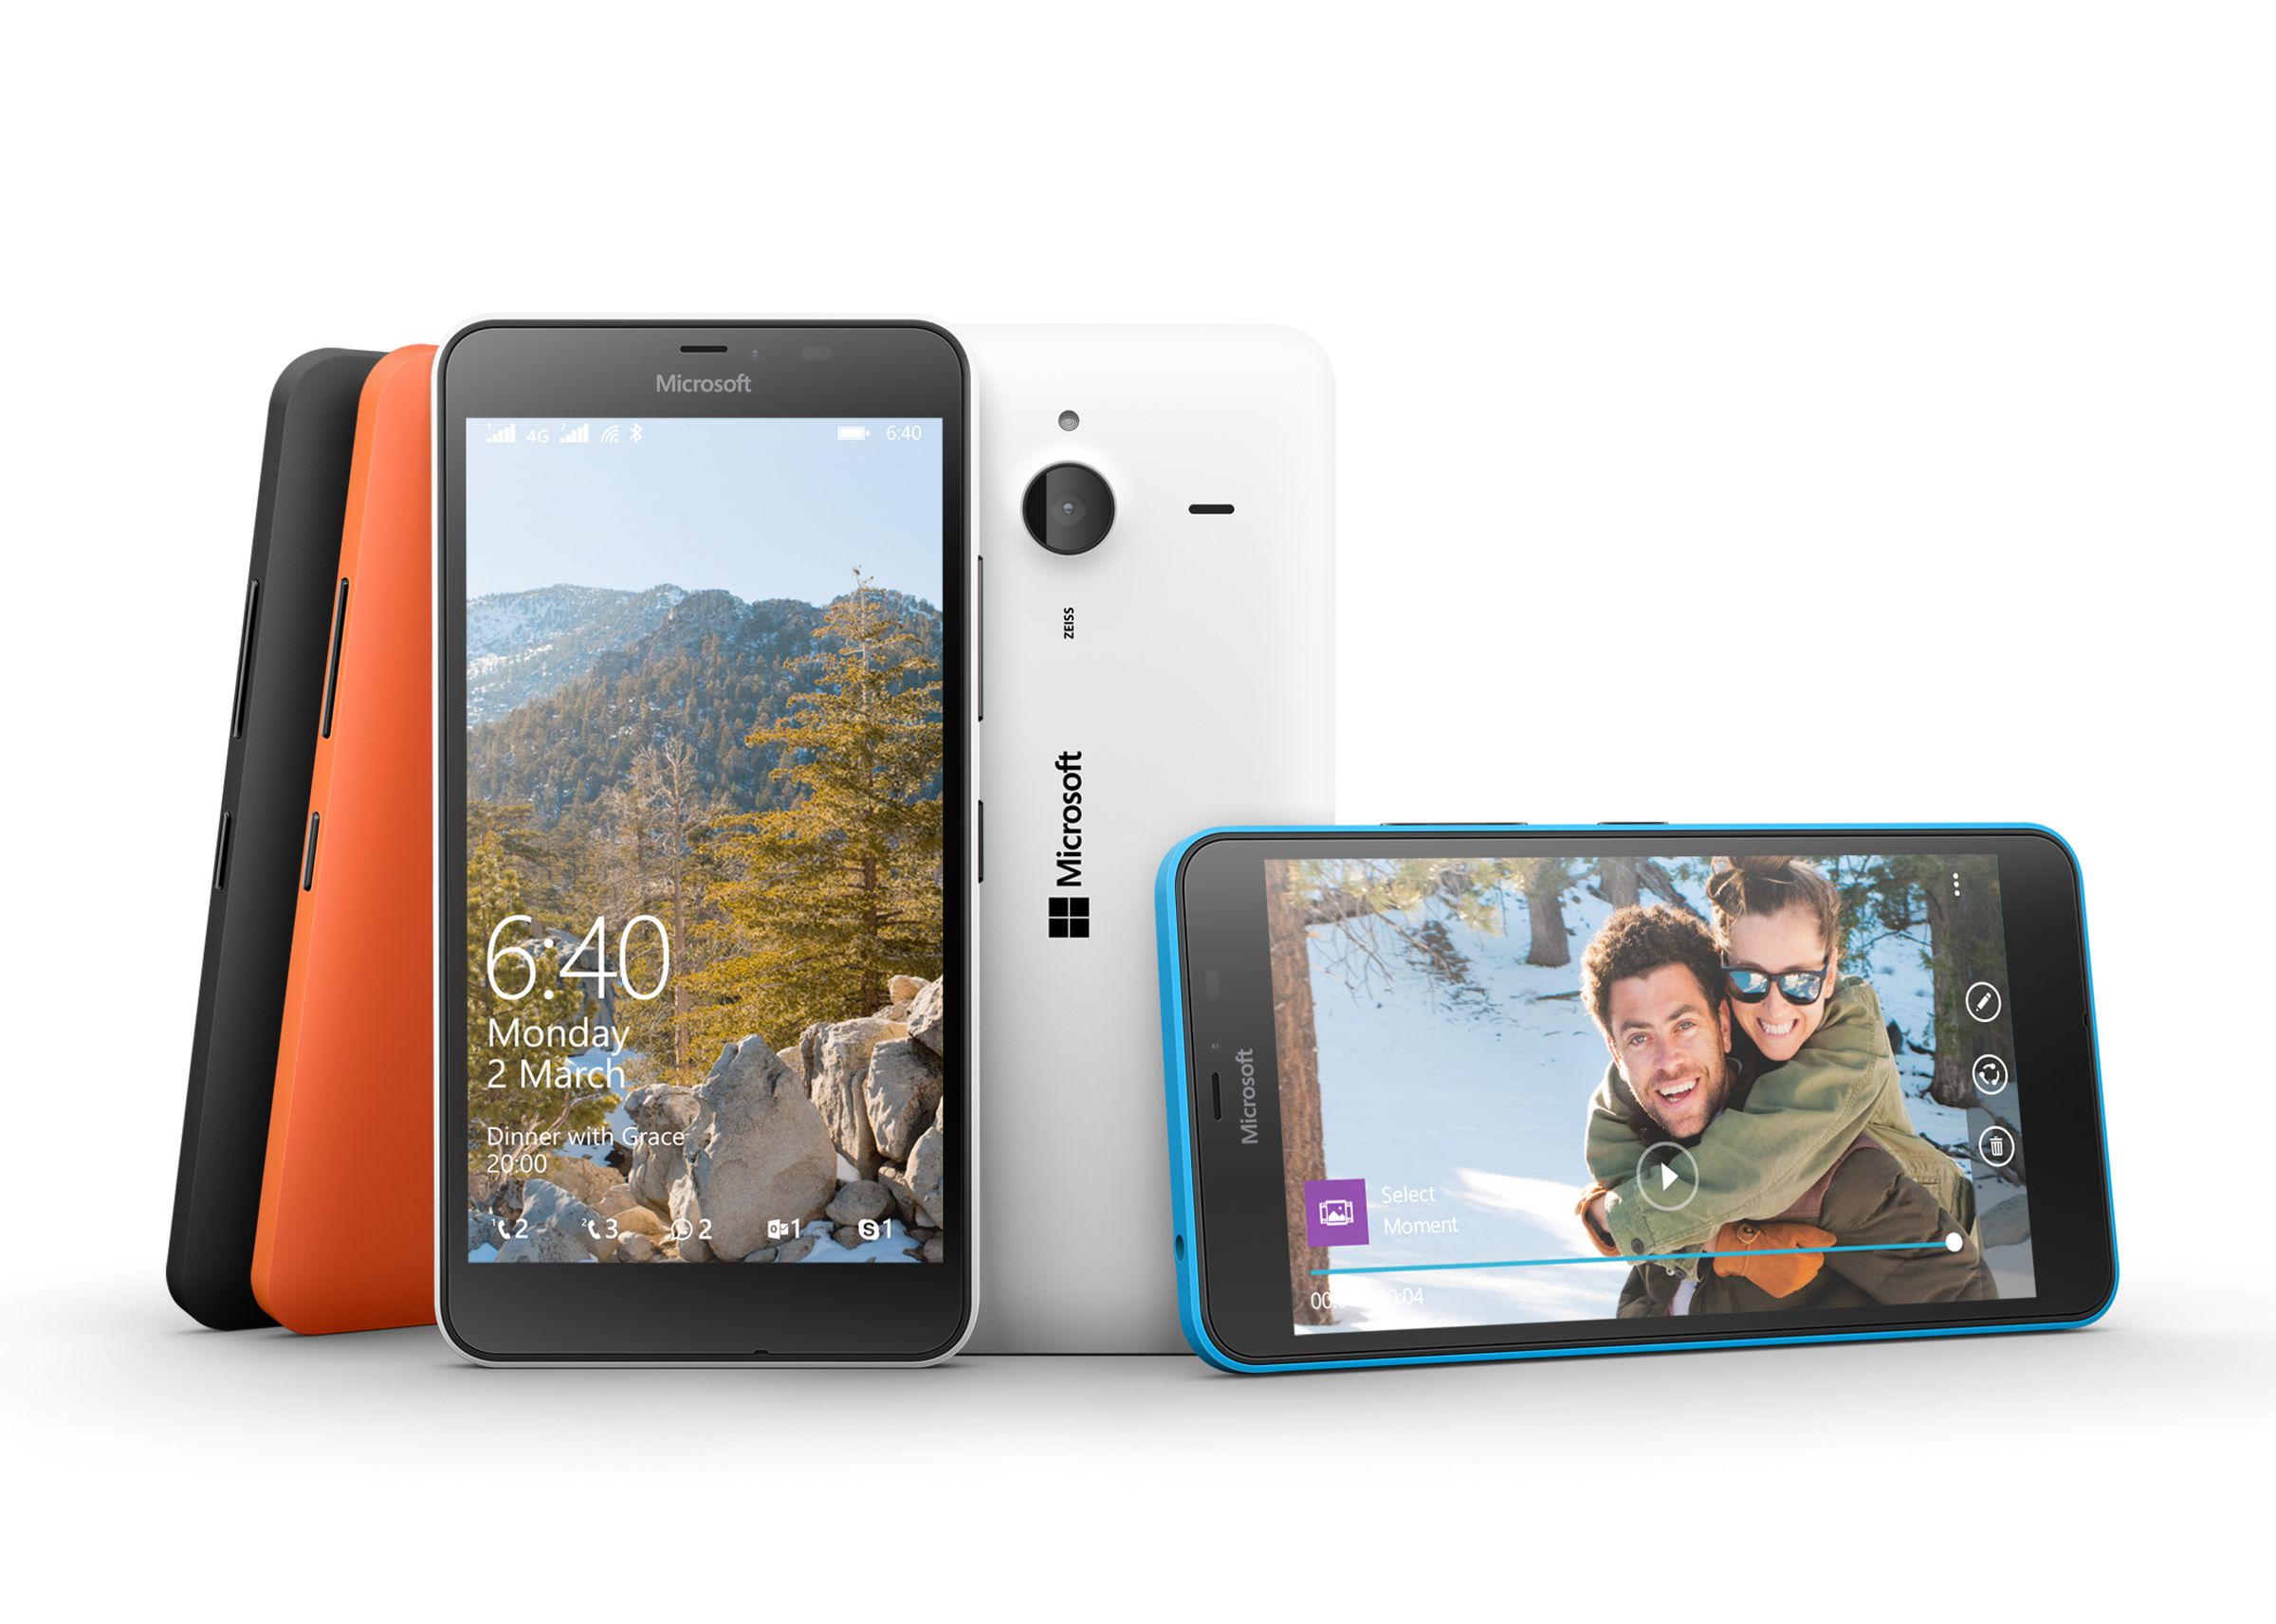 Lumia 640 and Lumia 640 XL hands-on photos